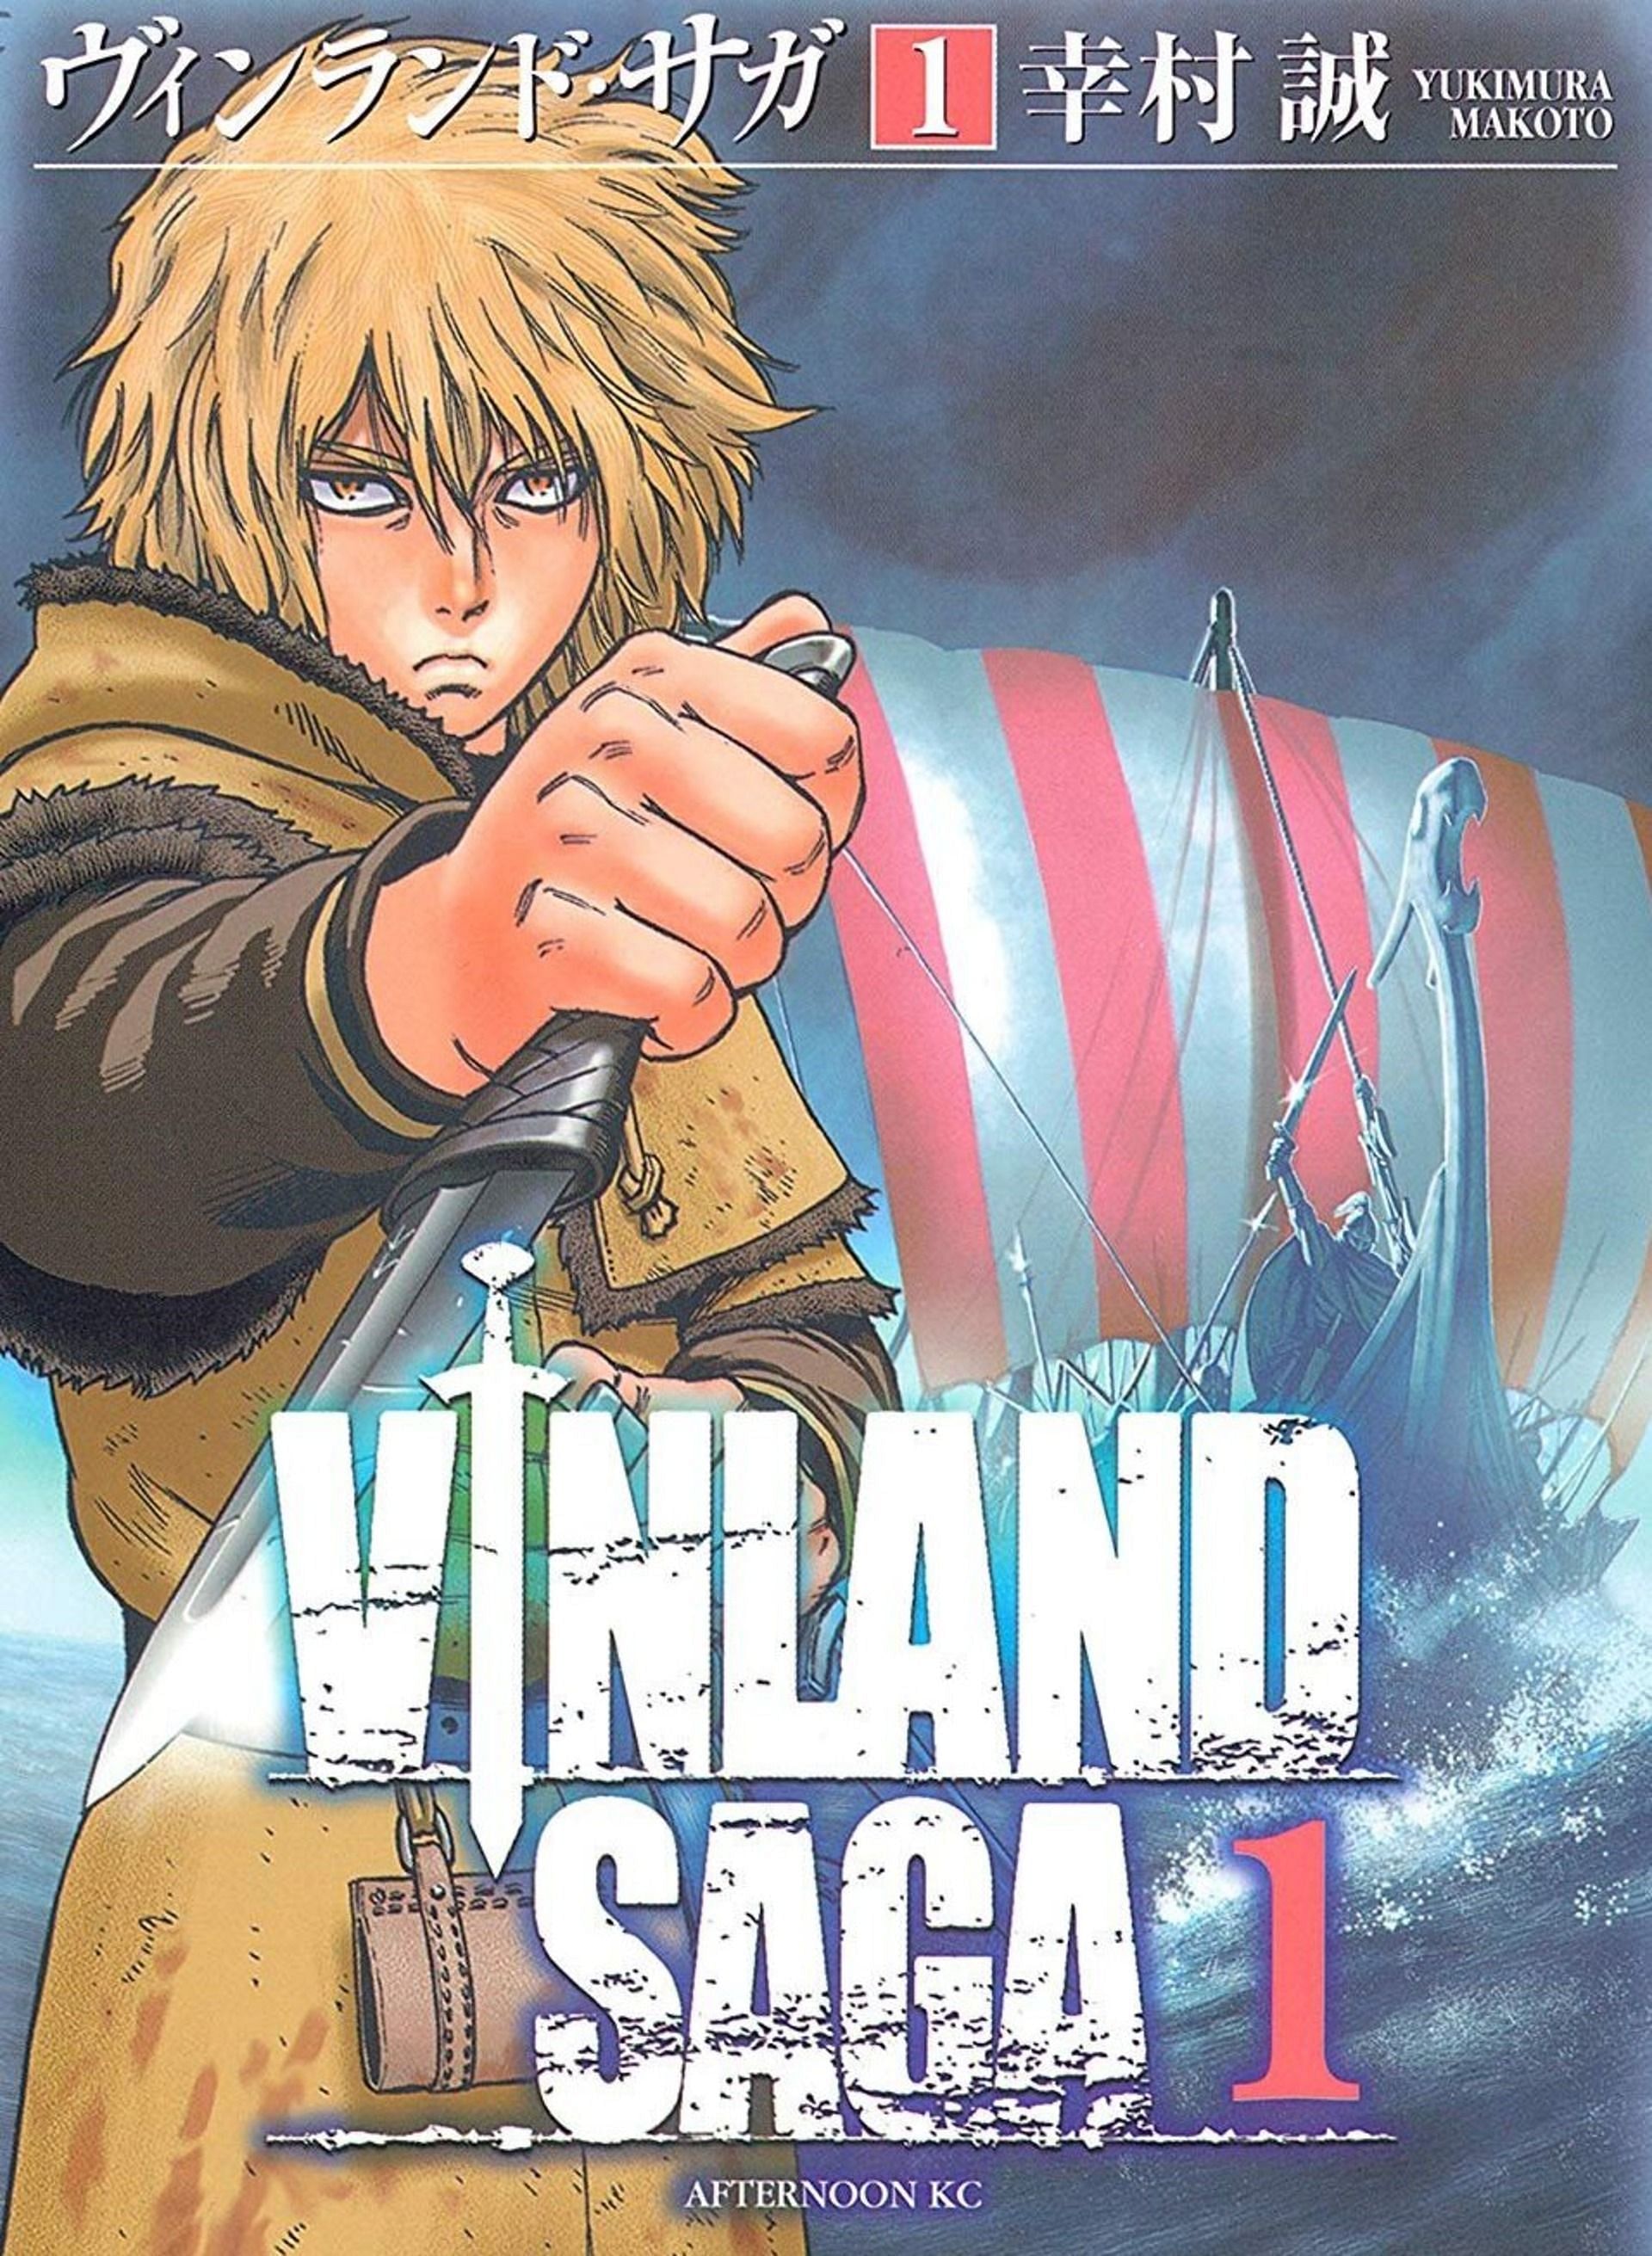 Vinland Saga (Image via Makoto Yukimura, Kodansha)